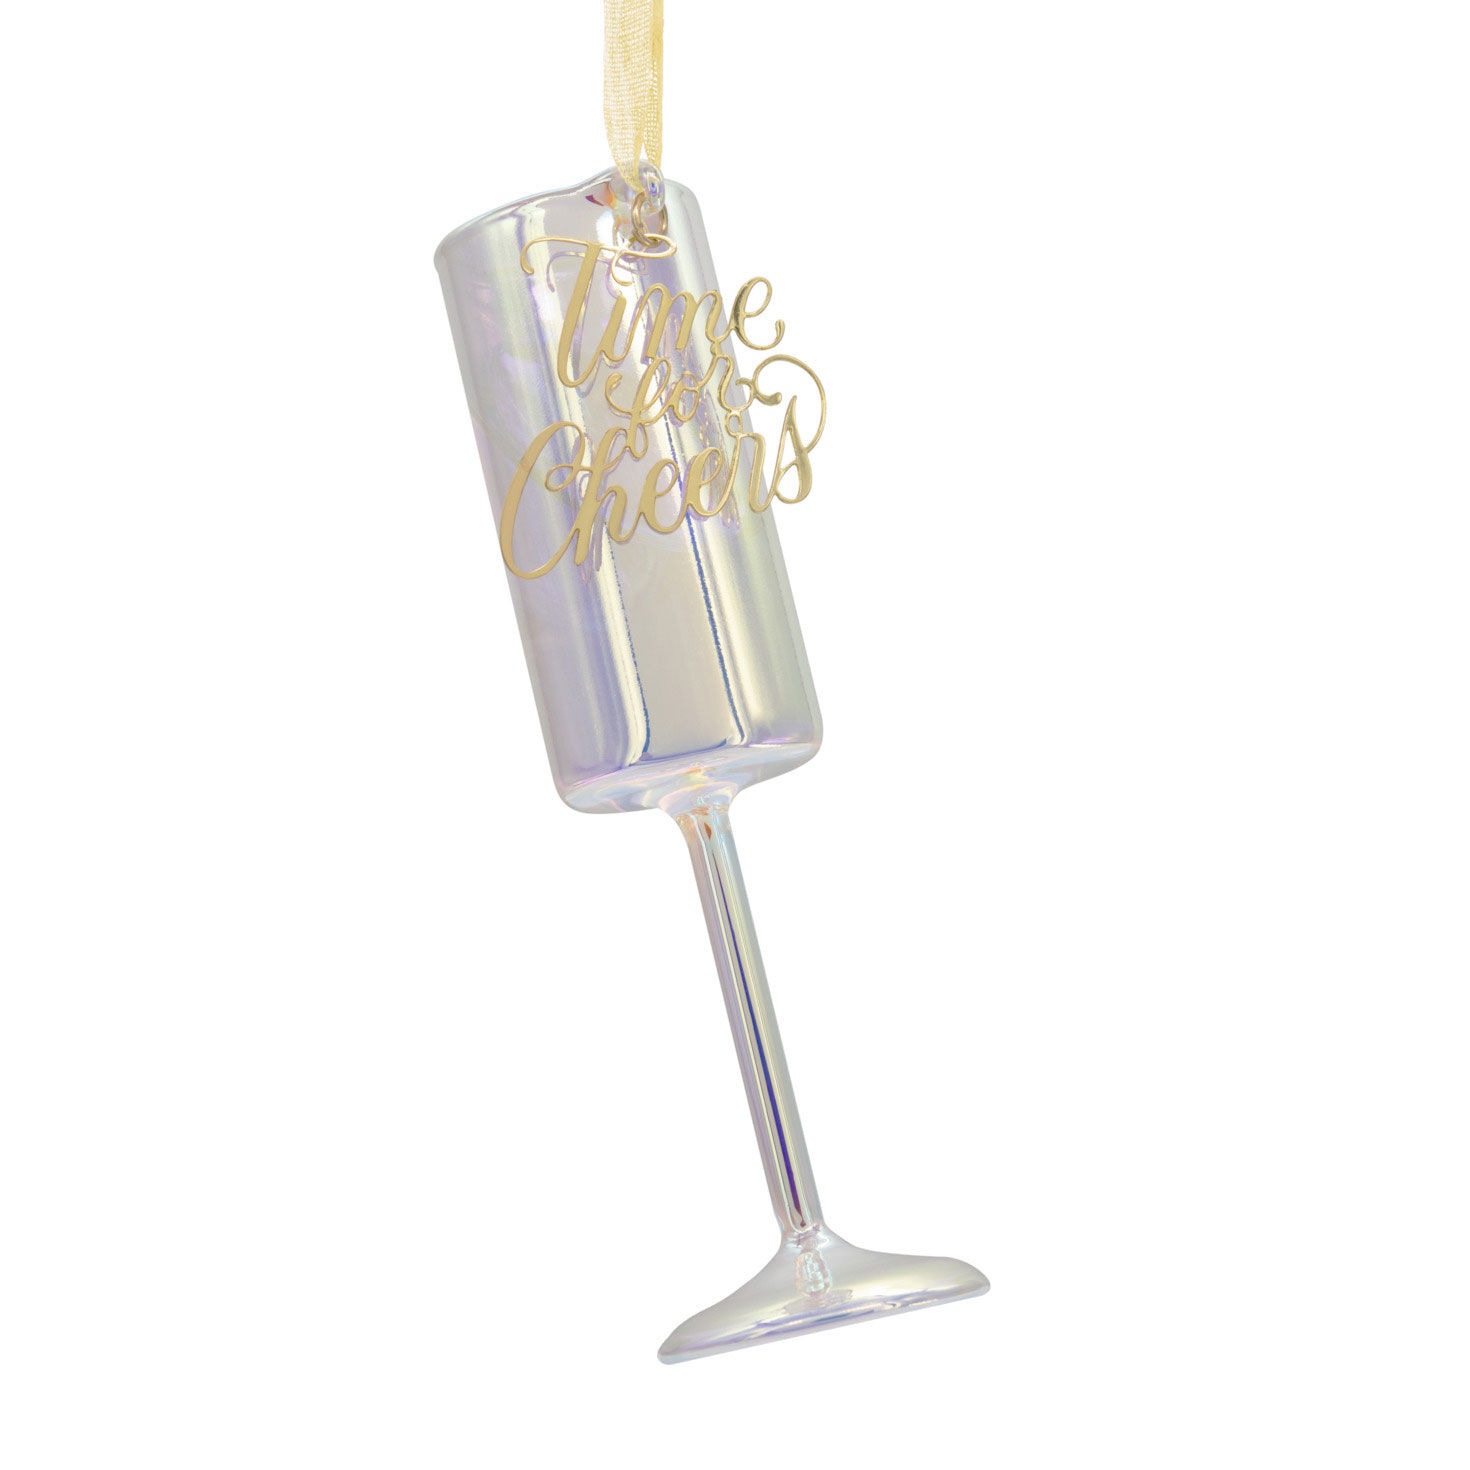 Signature Champagne Flute Premium Blown Glass Hallmark Ornament for only USD 19.99 | Hallmark